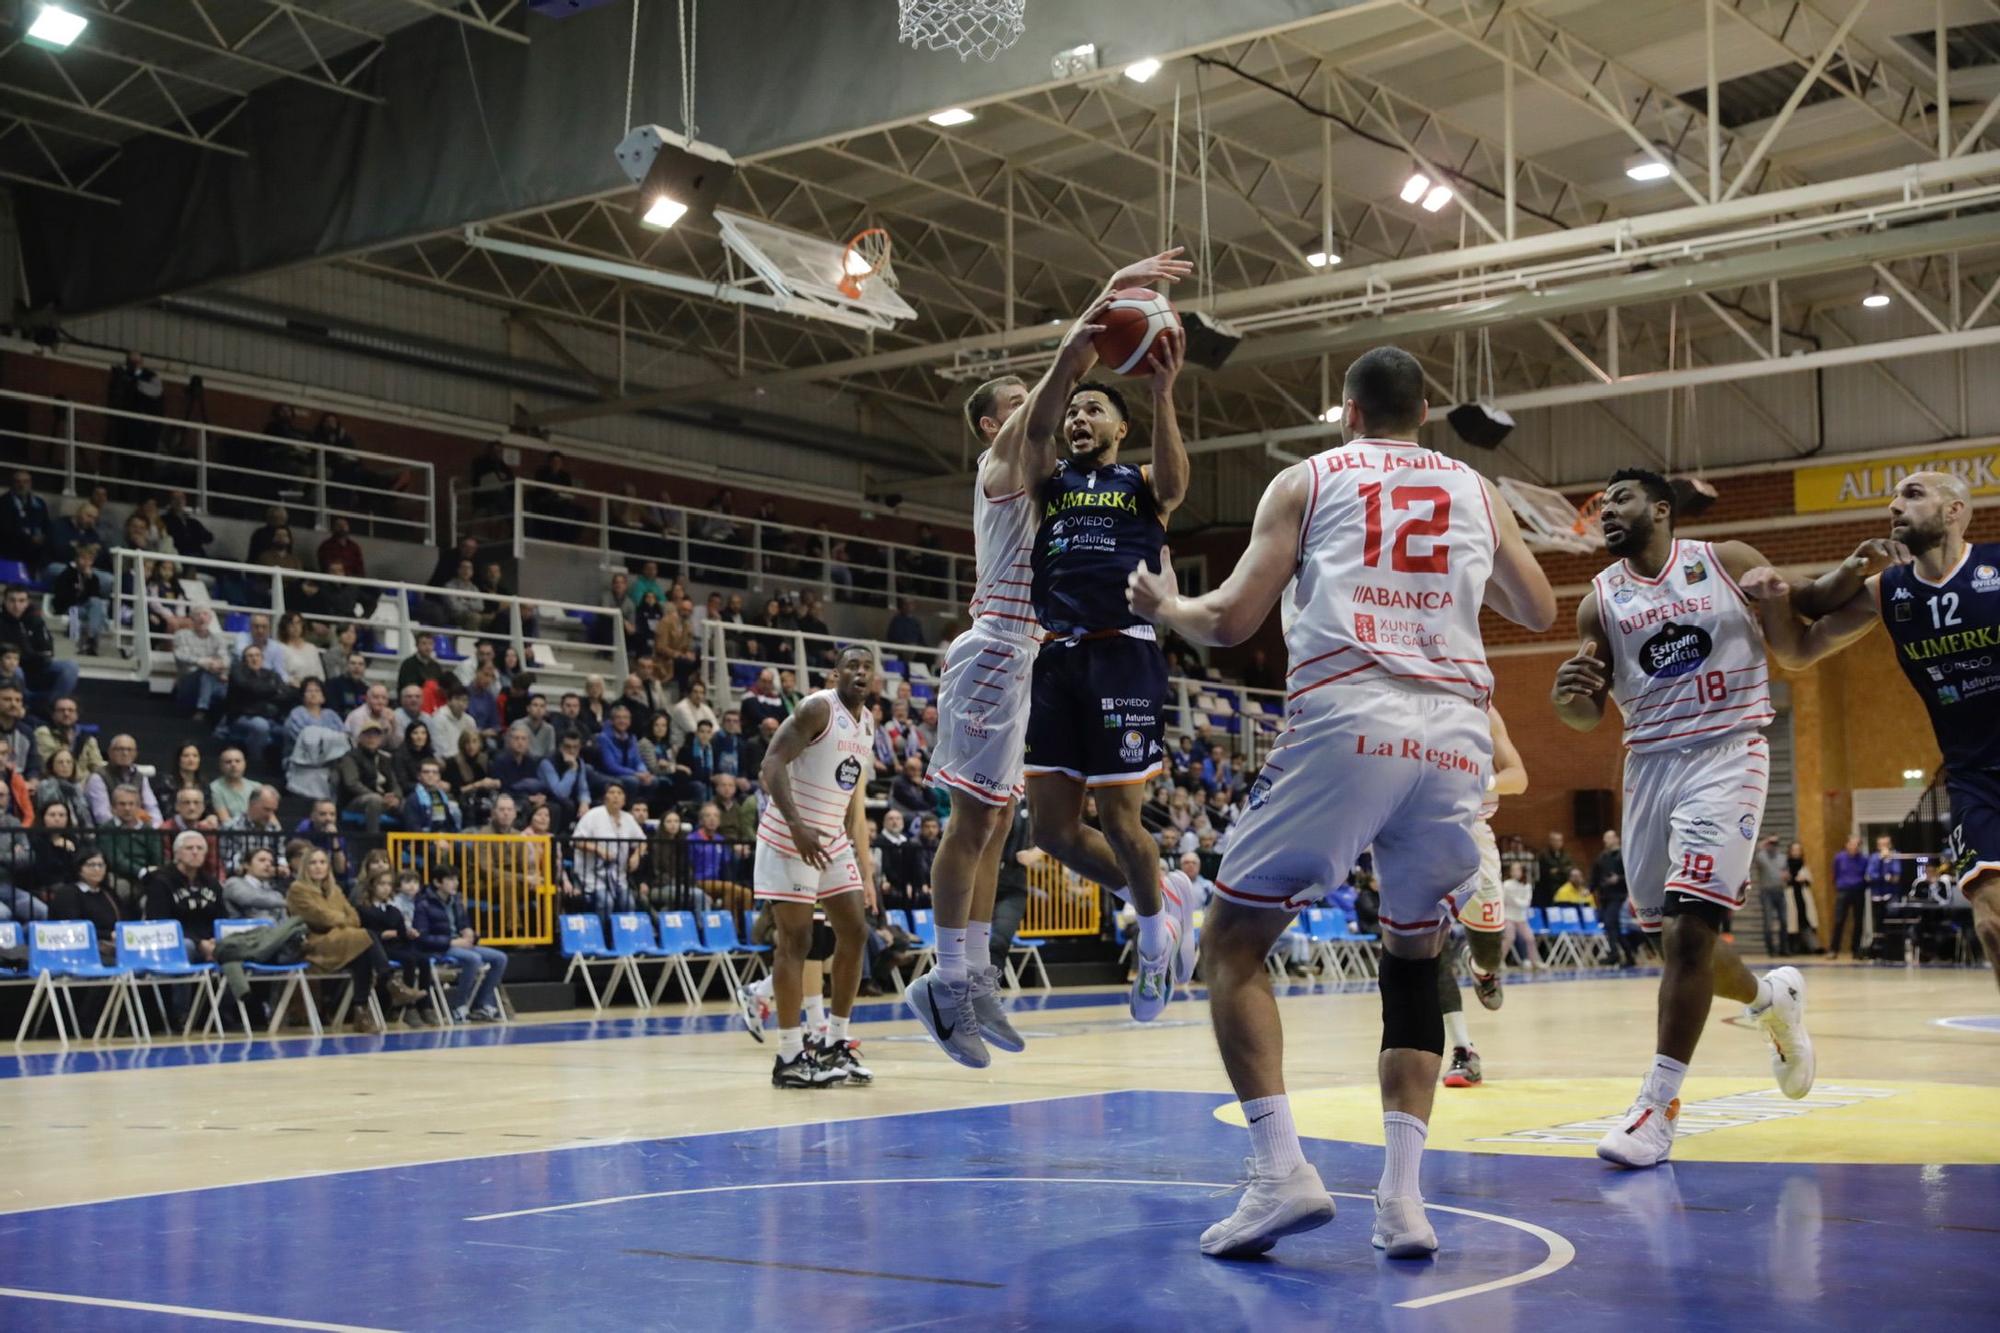 El Alimerka Oviedo Baloncesto se impone al Ourense (75-58) y sigue en racha